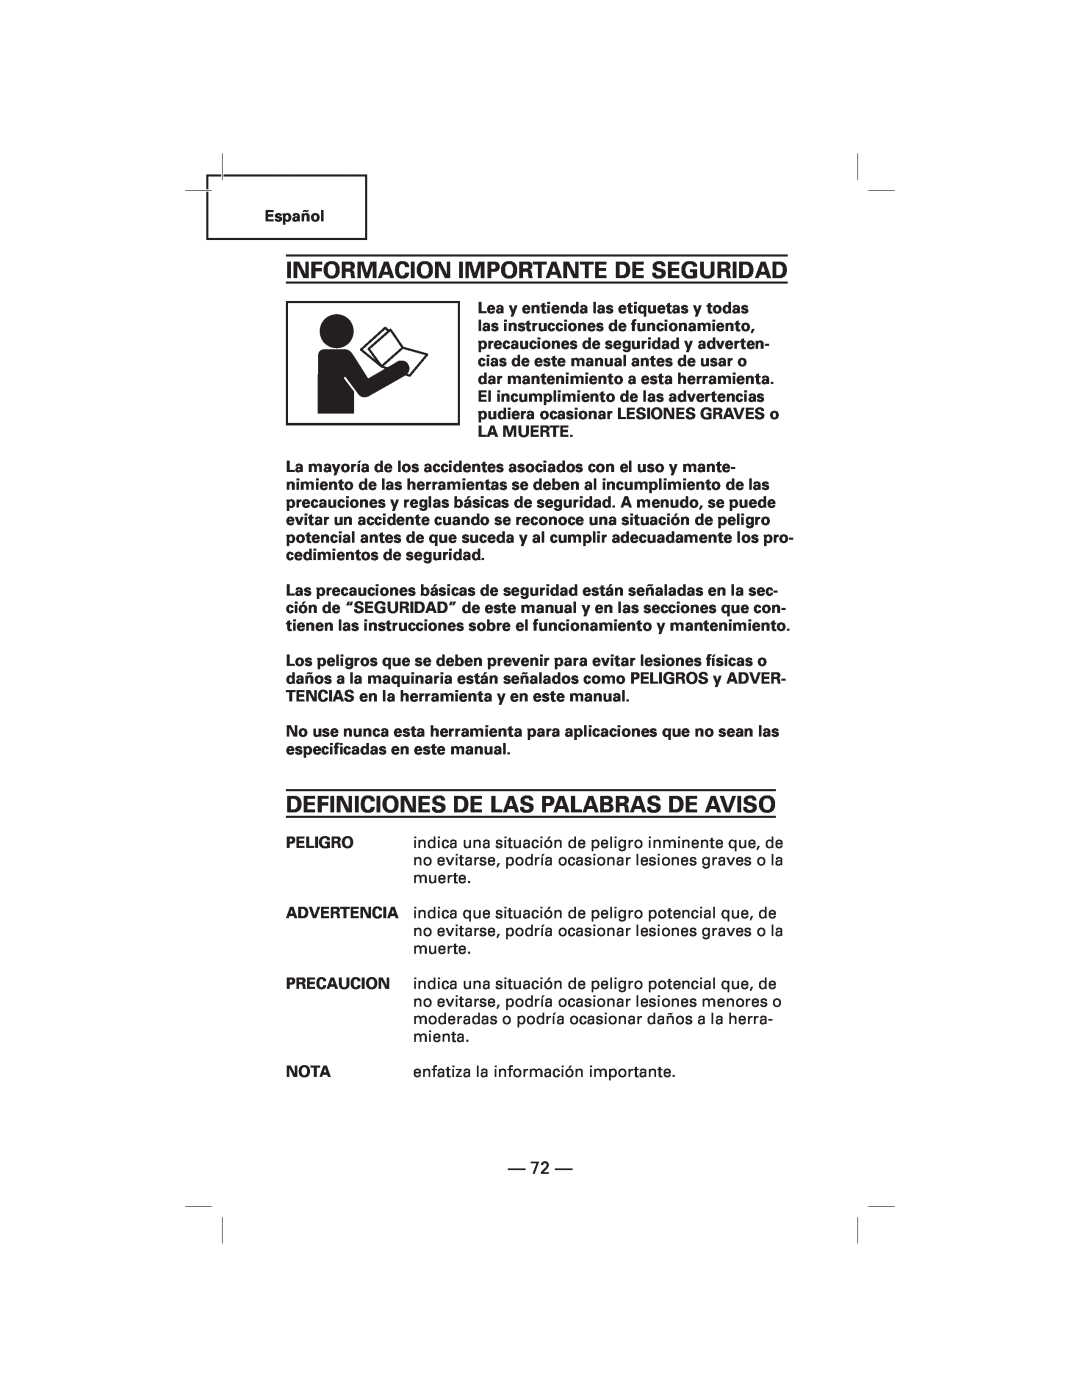 Hitachi N5009AF, NT50AF manual Informacion Importante De Seguridad, Definiciones De Las Palabras De Aviso 